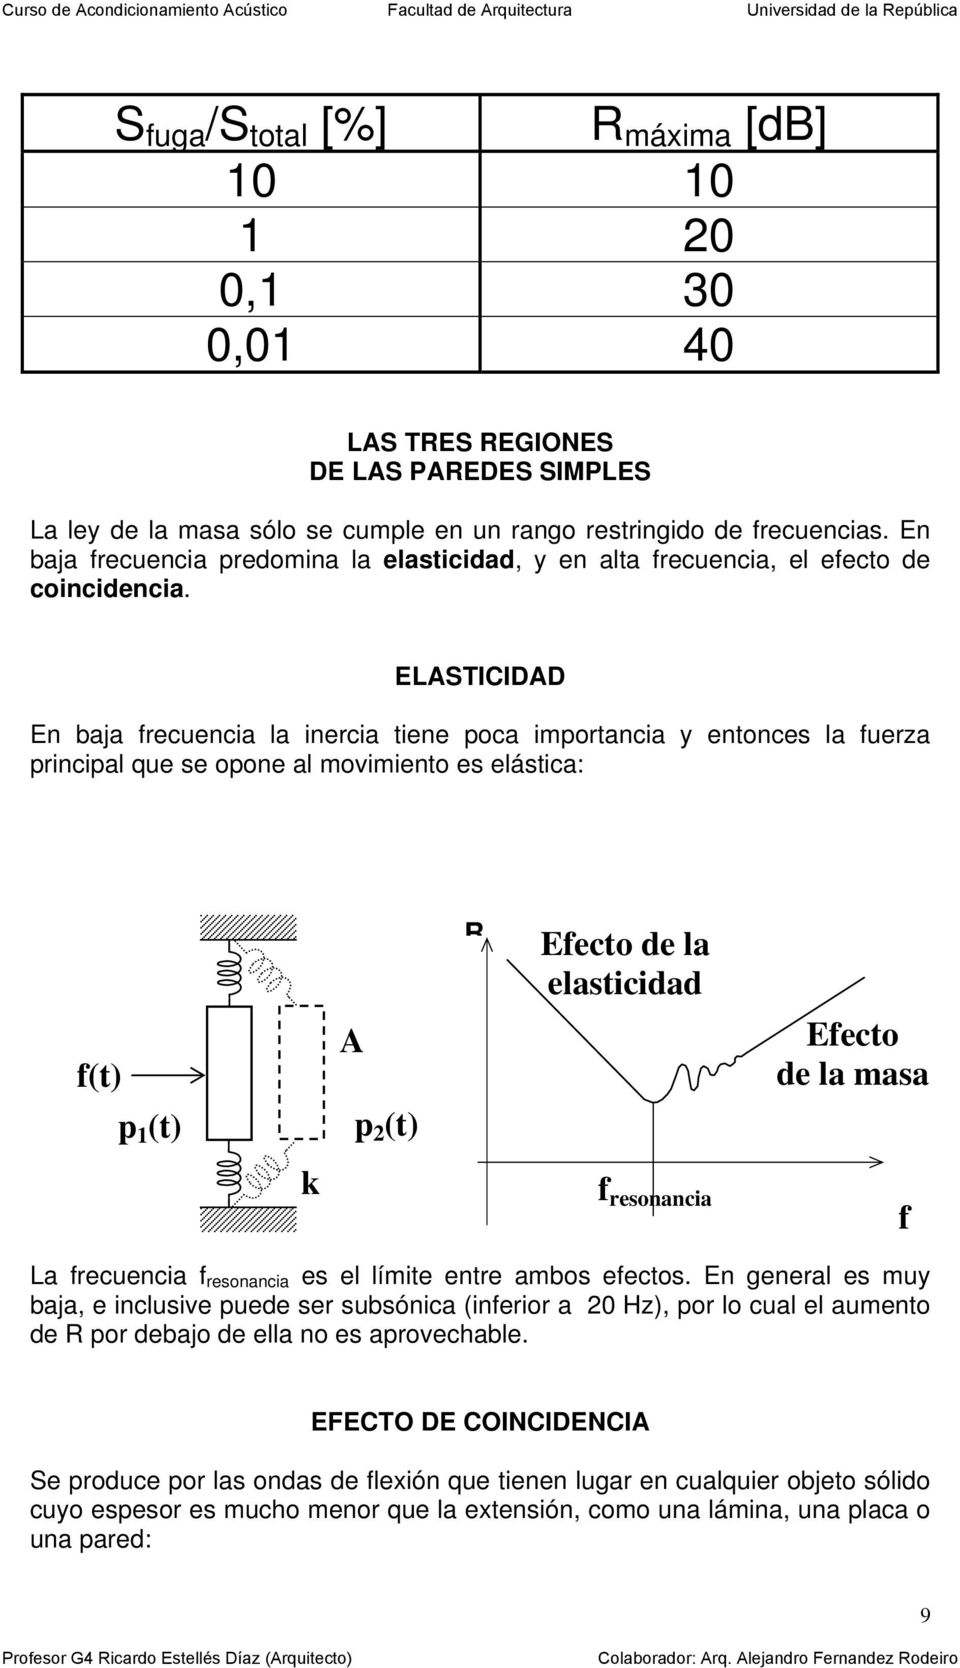 ELASTICIDAD En baja frecuencia la inercia tiene poca importancia y entonces la fuerza principal que se opone al movimiento es elástica: f(t) p 1 (t) A p 2 (t) R Efecto de la elasticidad Efecto de la